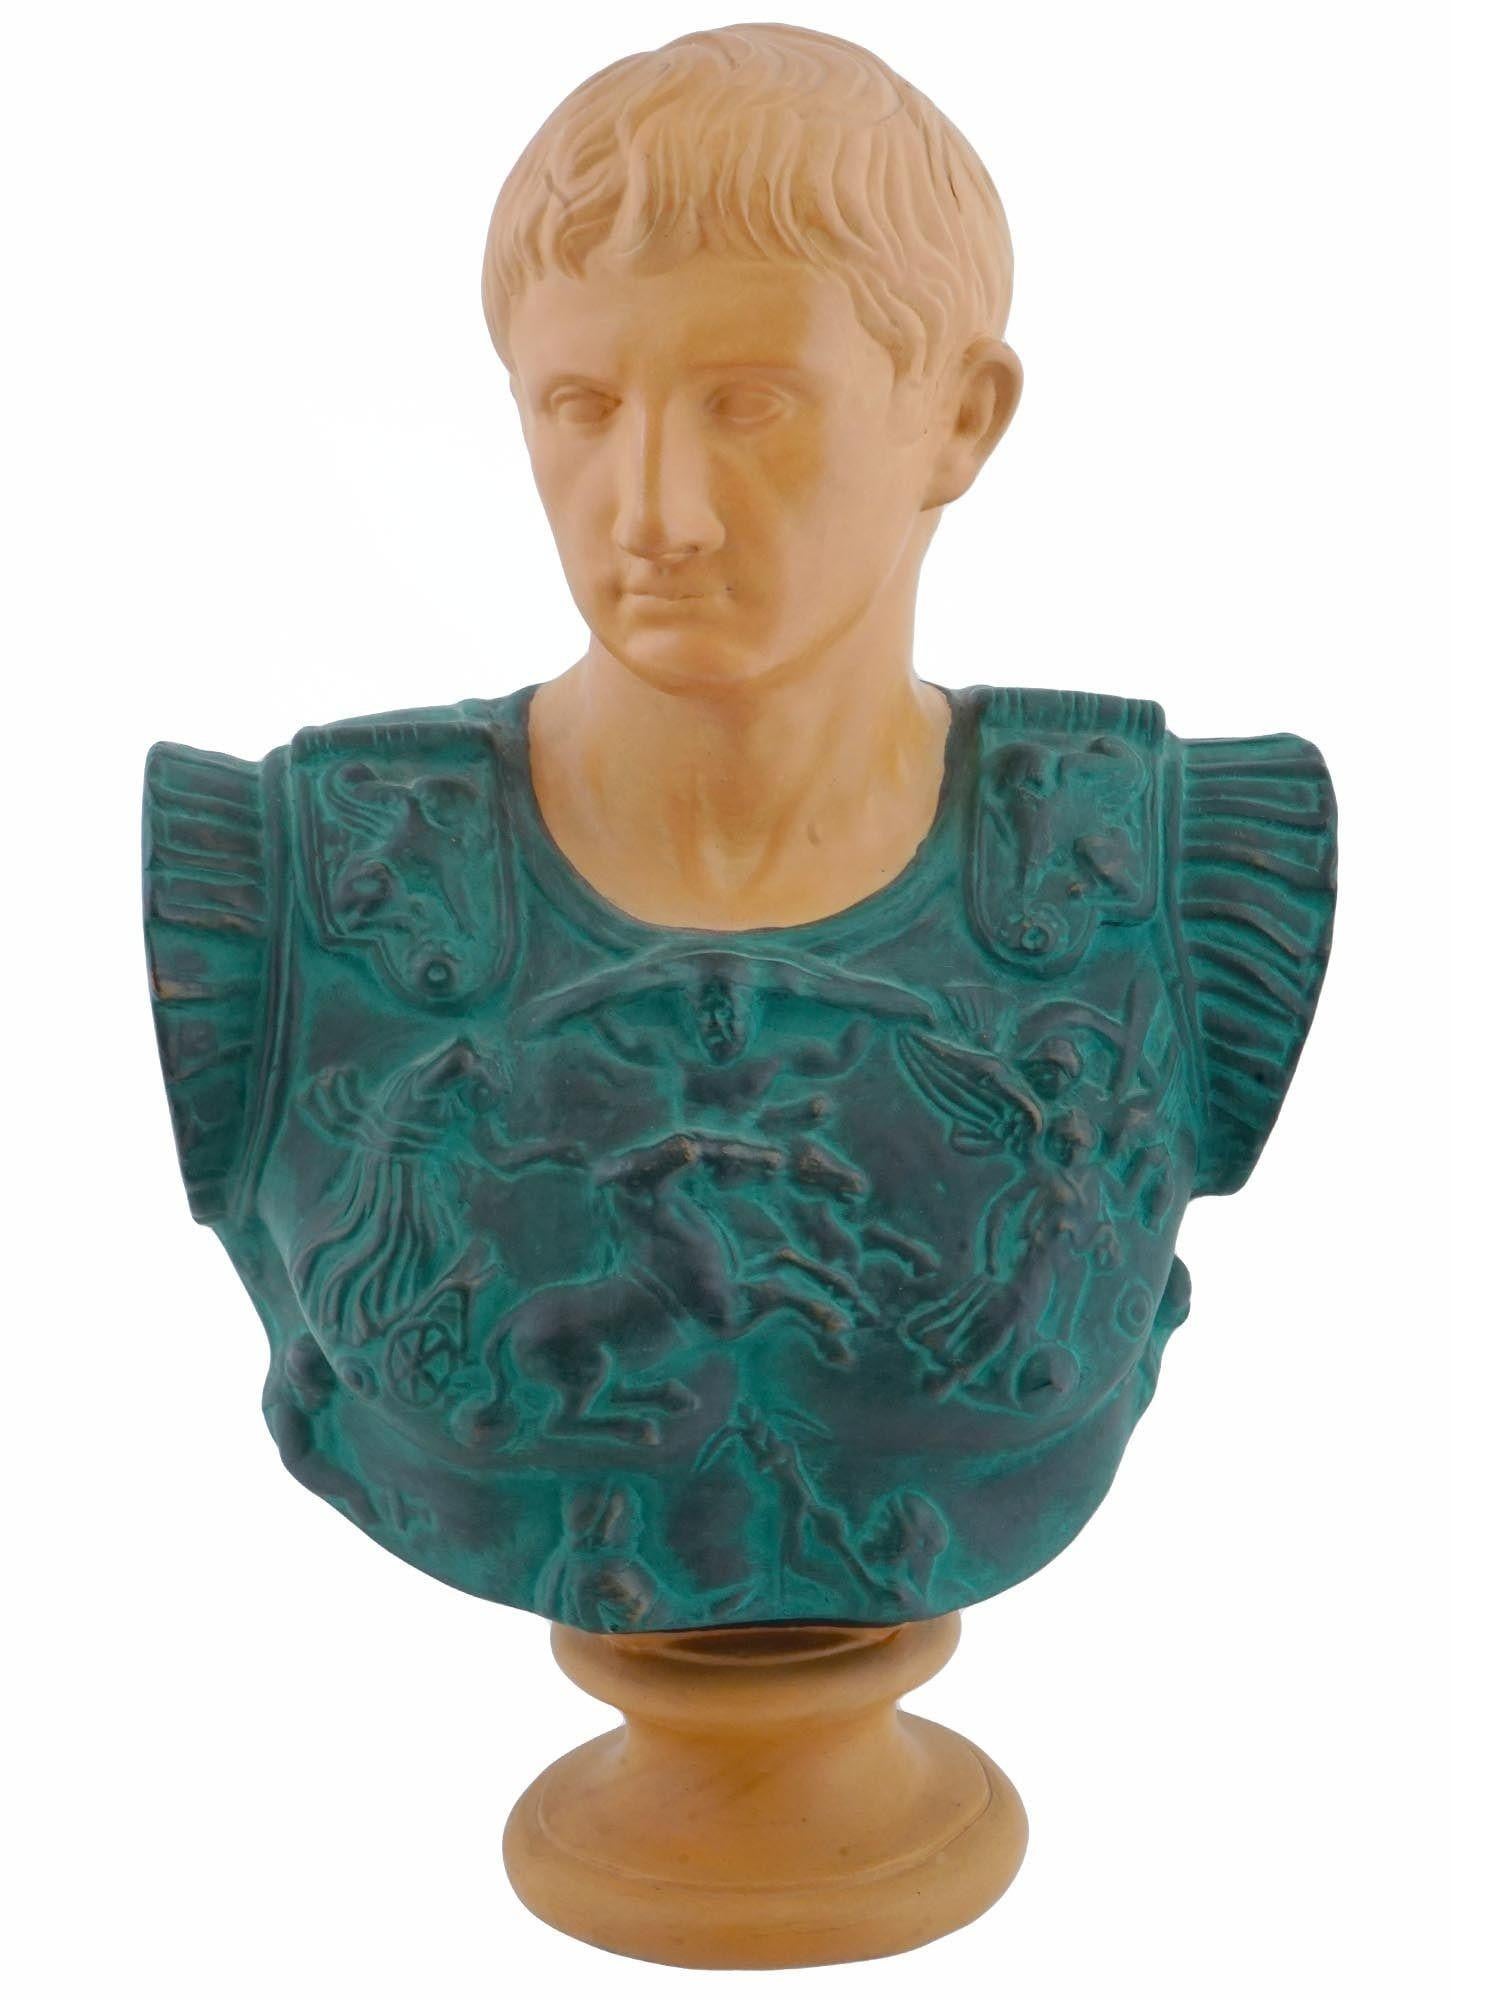 Ceramic Vintage Terracotta Bust Sculpture of Roman Emperor Caesar Augustus